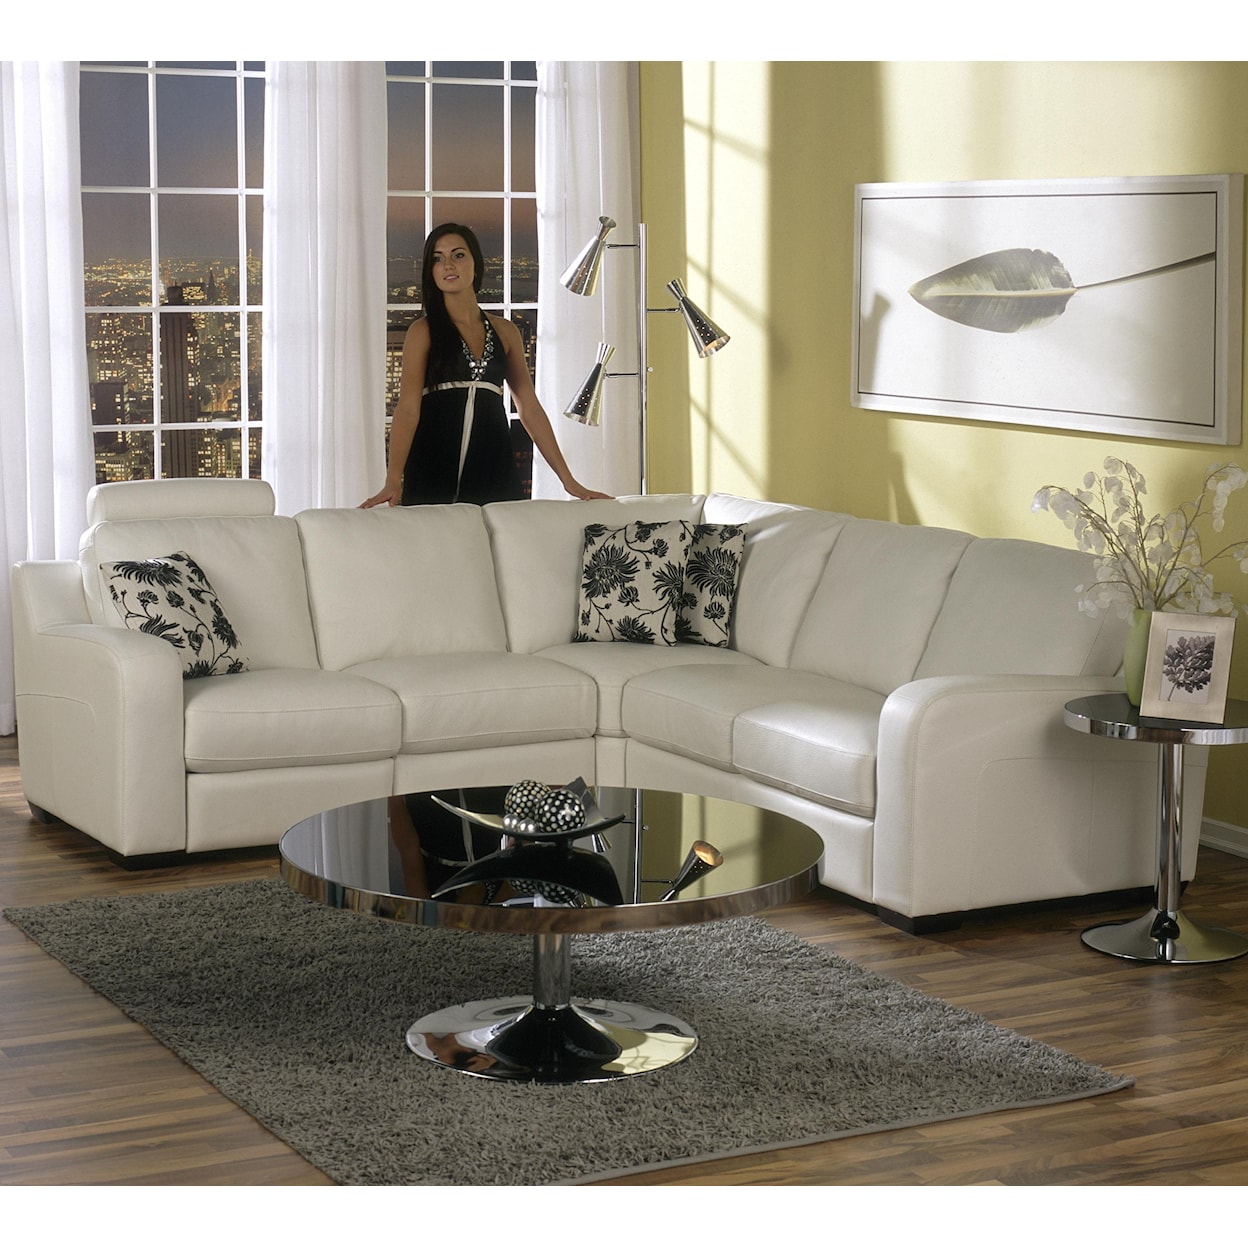 Palliser Flex Reclining Sectional Sofa